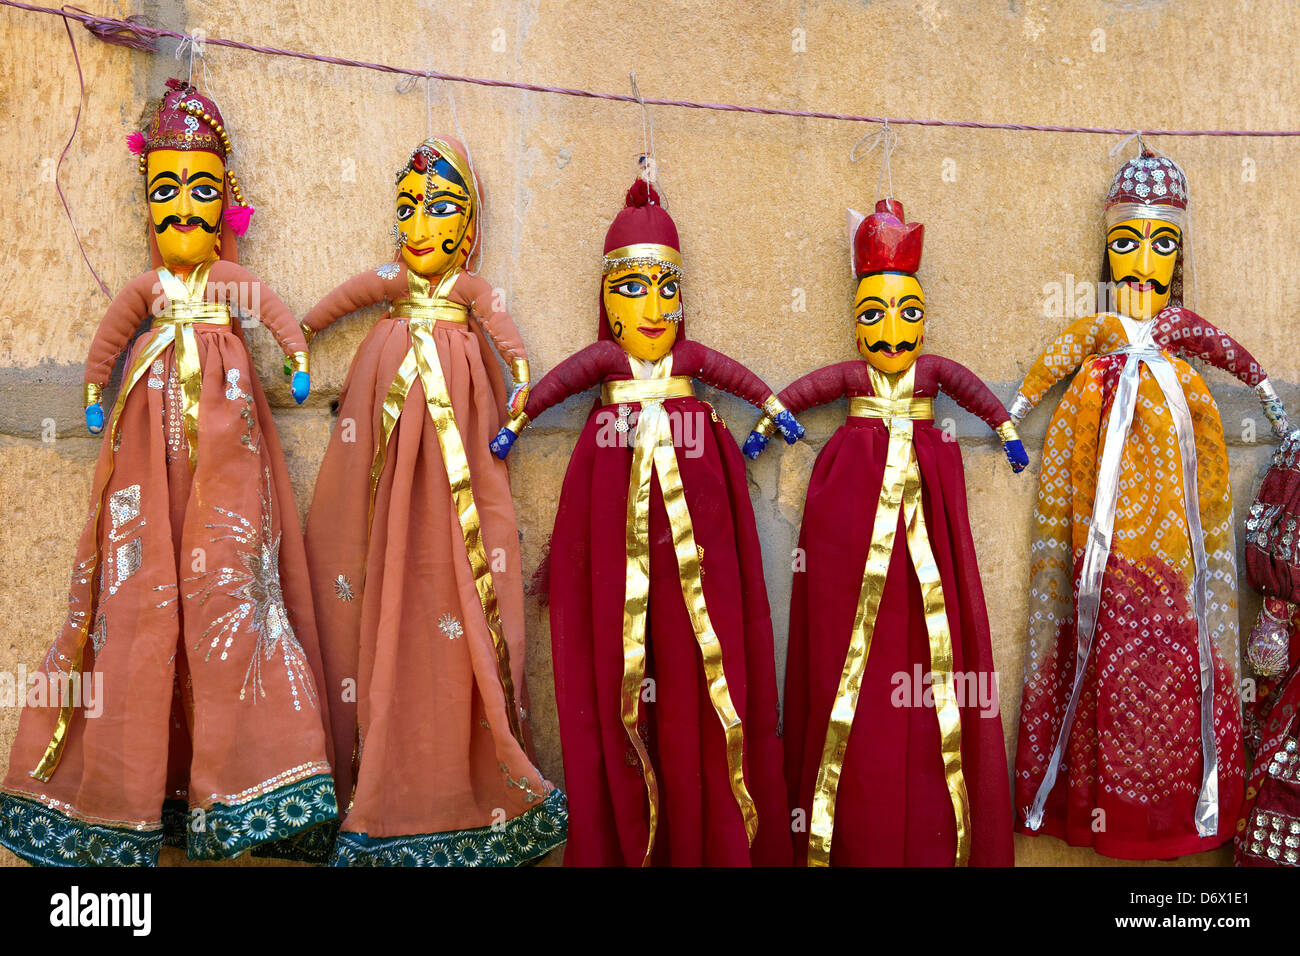 Souvenirs - indio populares muñecos marionetas tradicionales del norte de Rajasthan, Jaisalmer, India Foto de stock